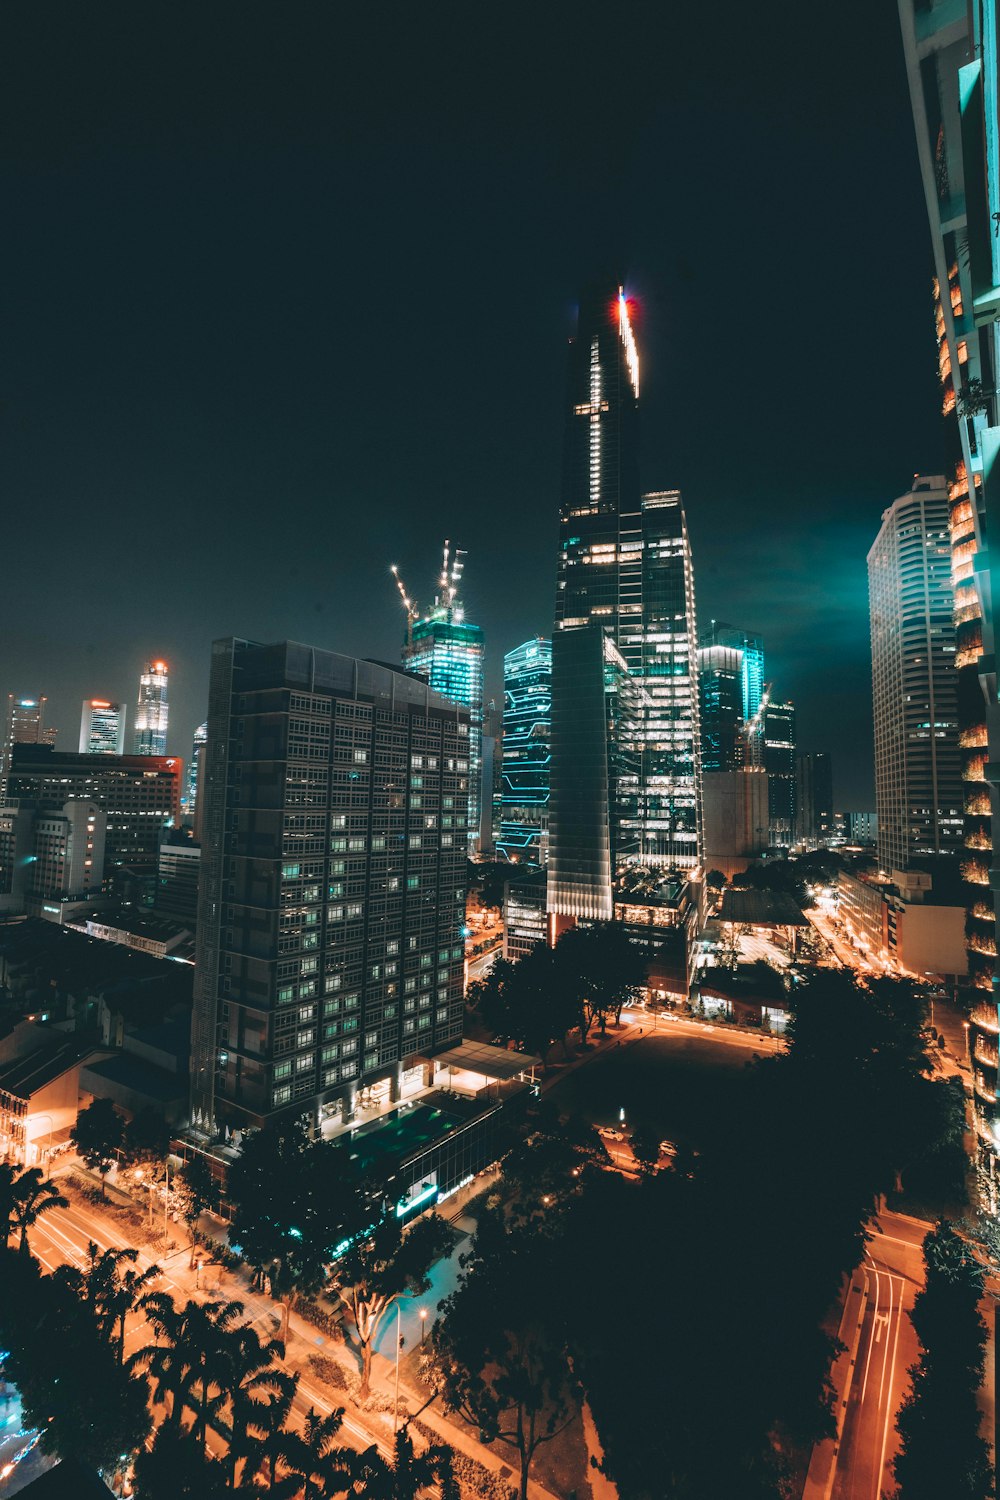 야간 동안 도시의 조명이 켜진 고층 건물의 사진